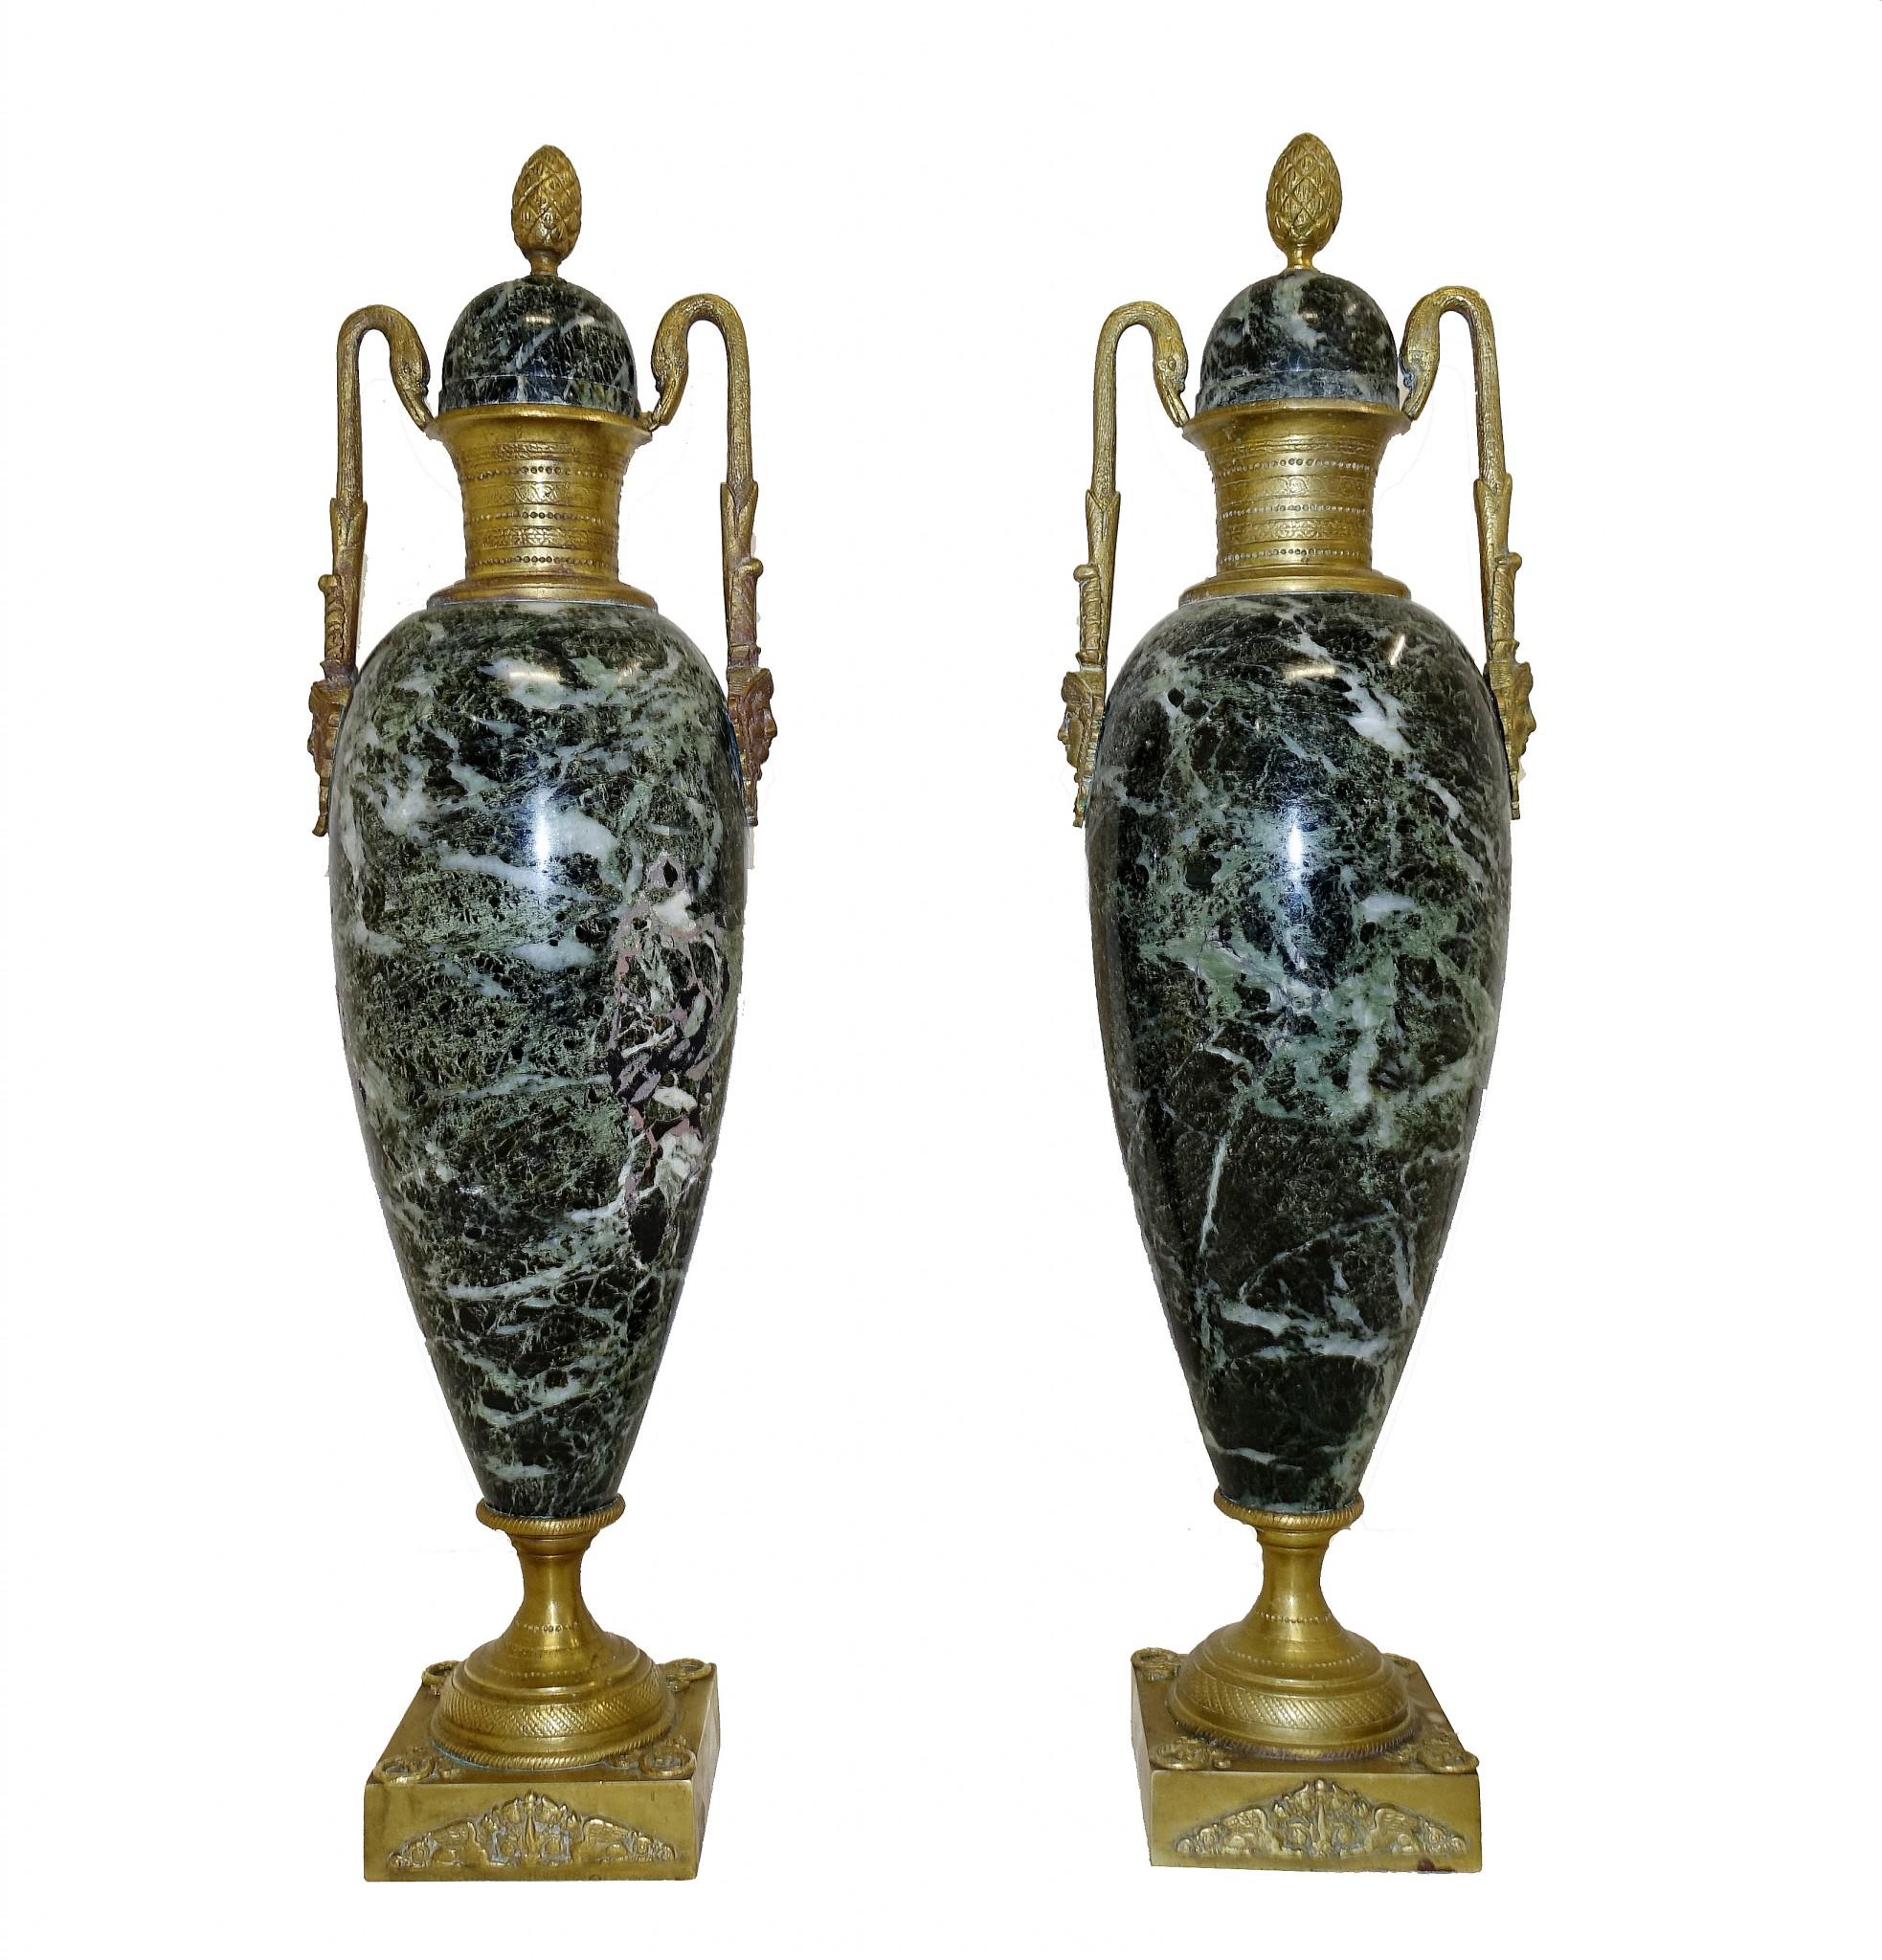 Elegante paire de cassolettes ou d'urnes en marbre françaises anciennes
Grande paire d'amphores de forme classique, très décoratives et de collection.
Les accessoires en bronze doré d'origine comprennent des fleurons en forme d'ananas et des